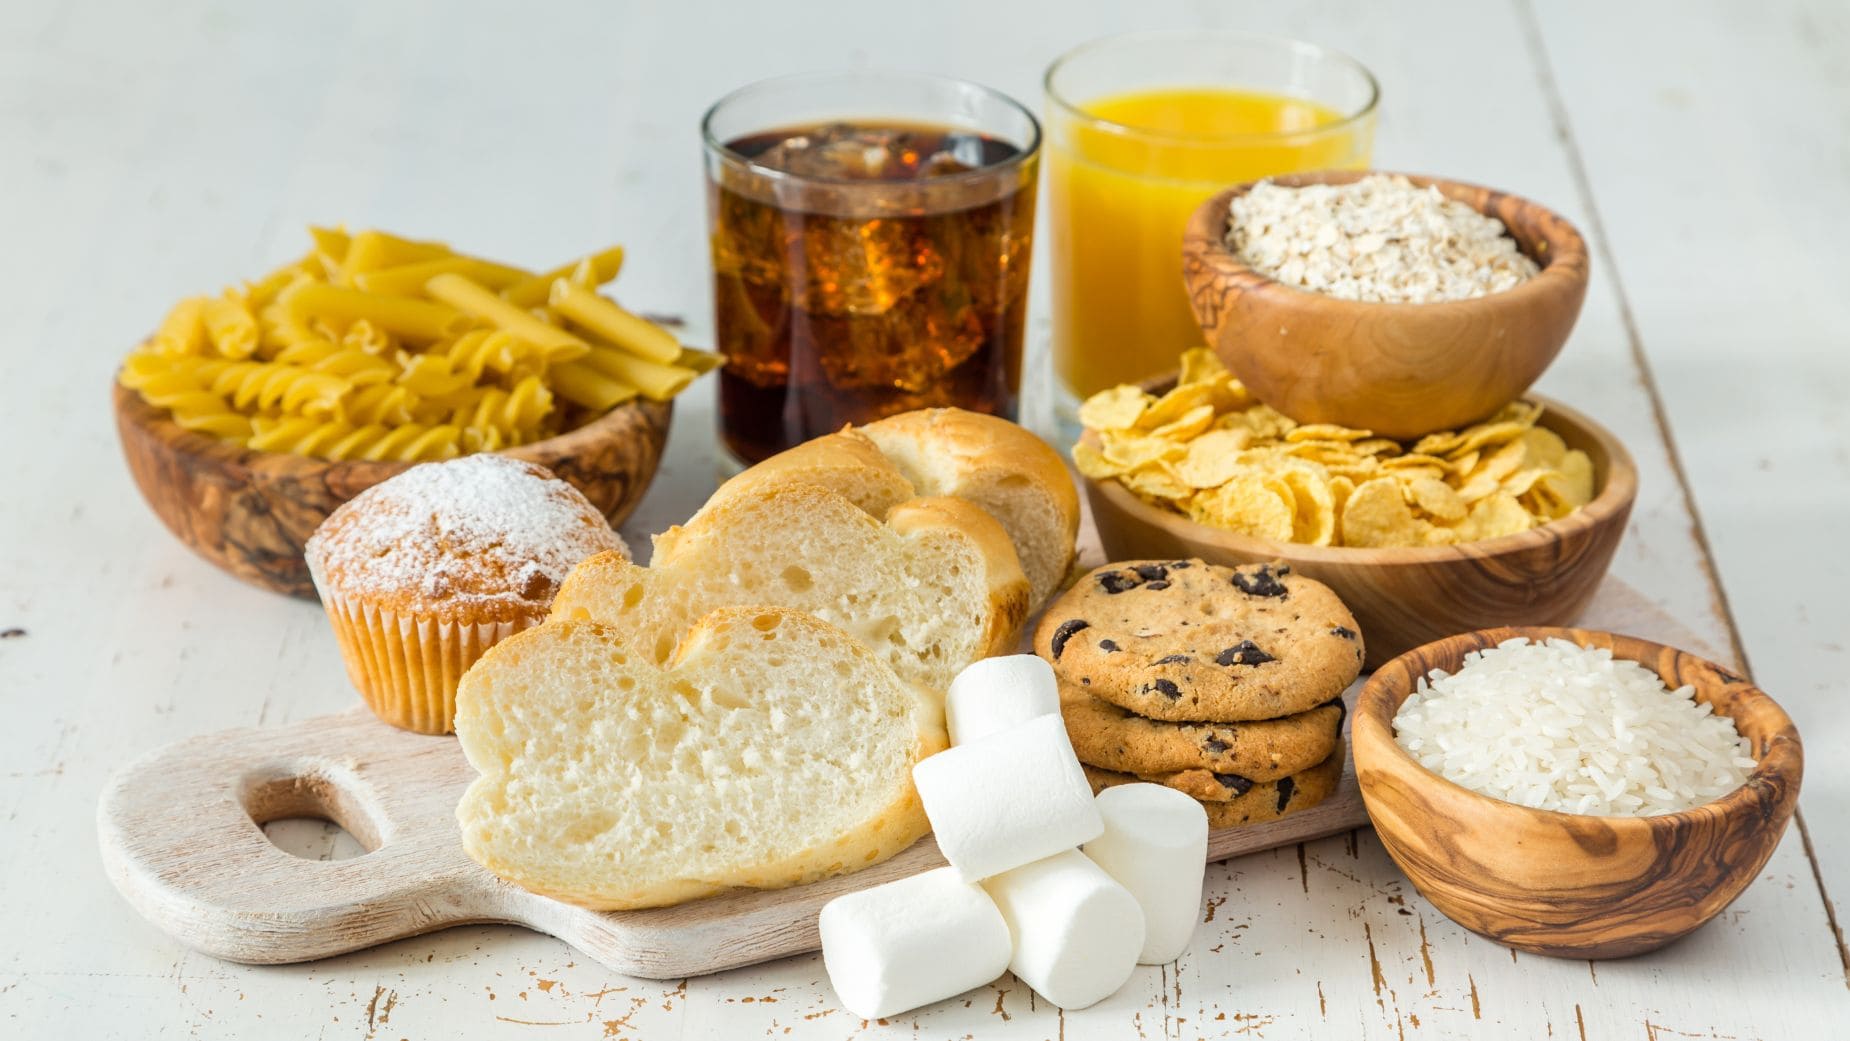 Harvard recomienda elegir bien los carbohidratos para tener una dieta saludable